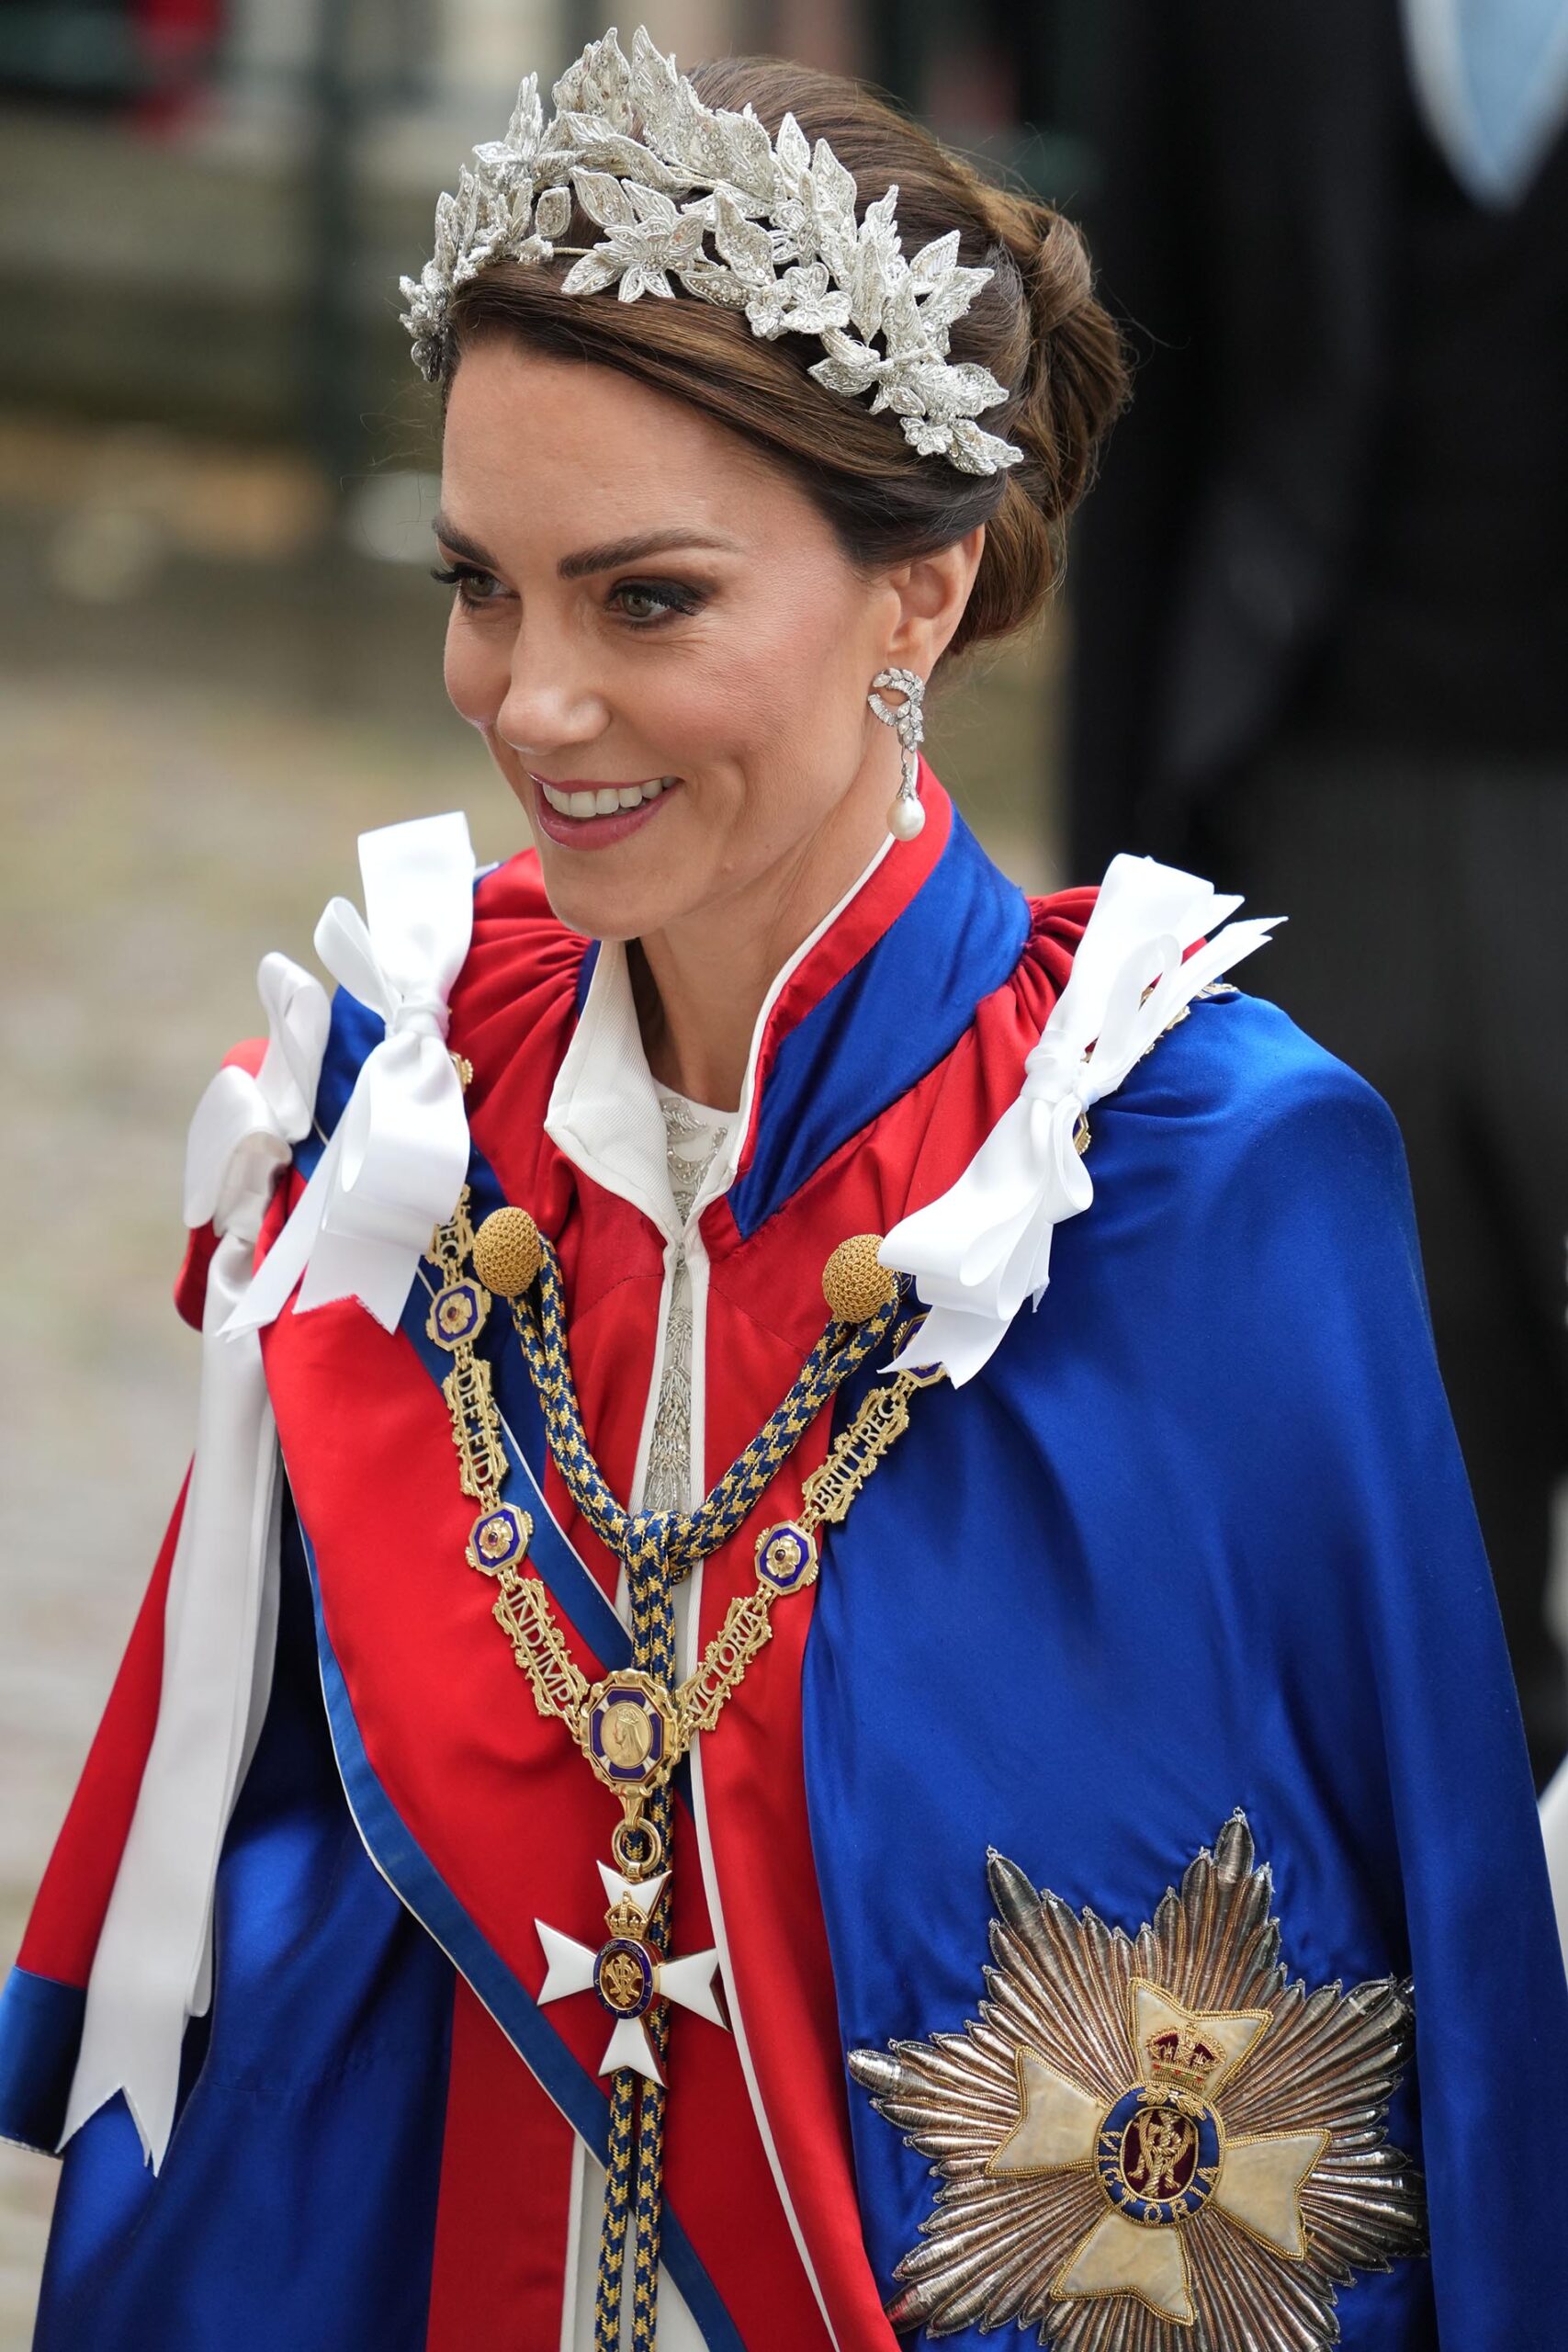 Kate usa vestido da mesma grife do casamento na coroação